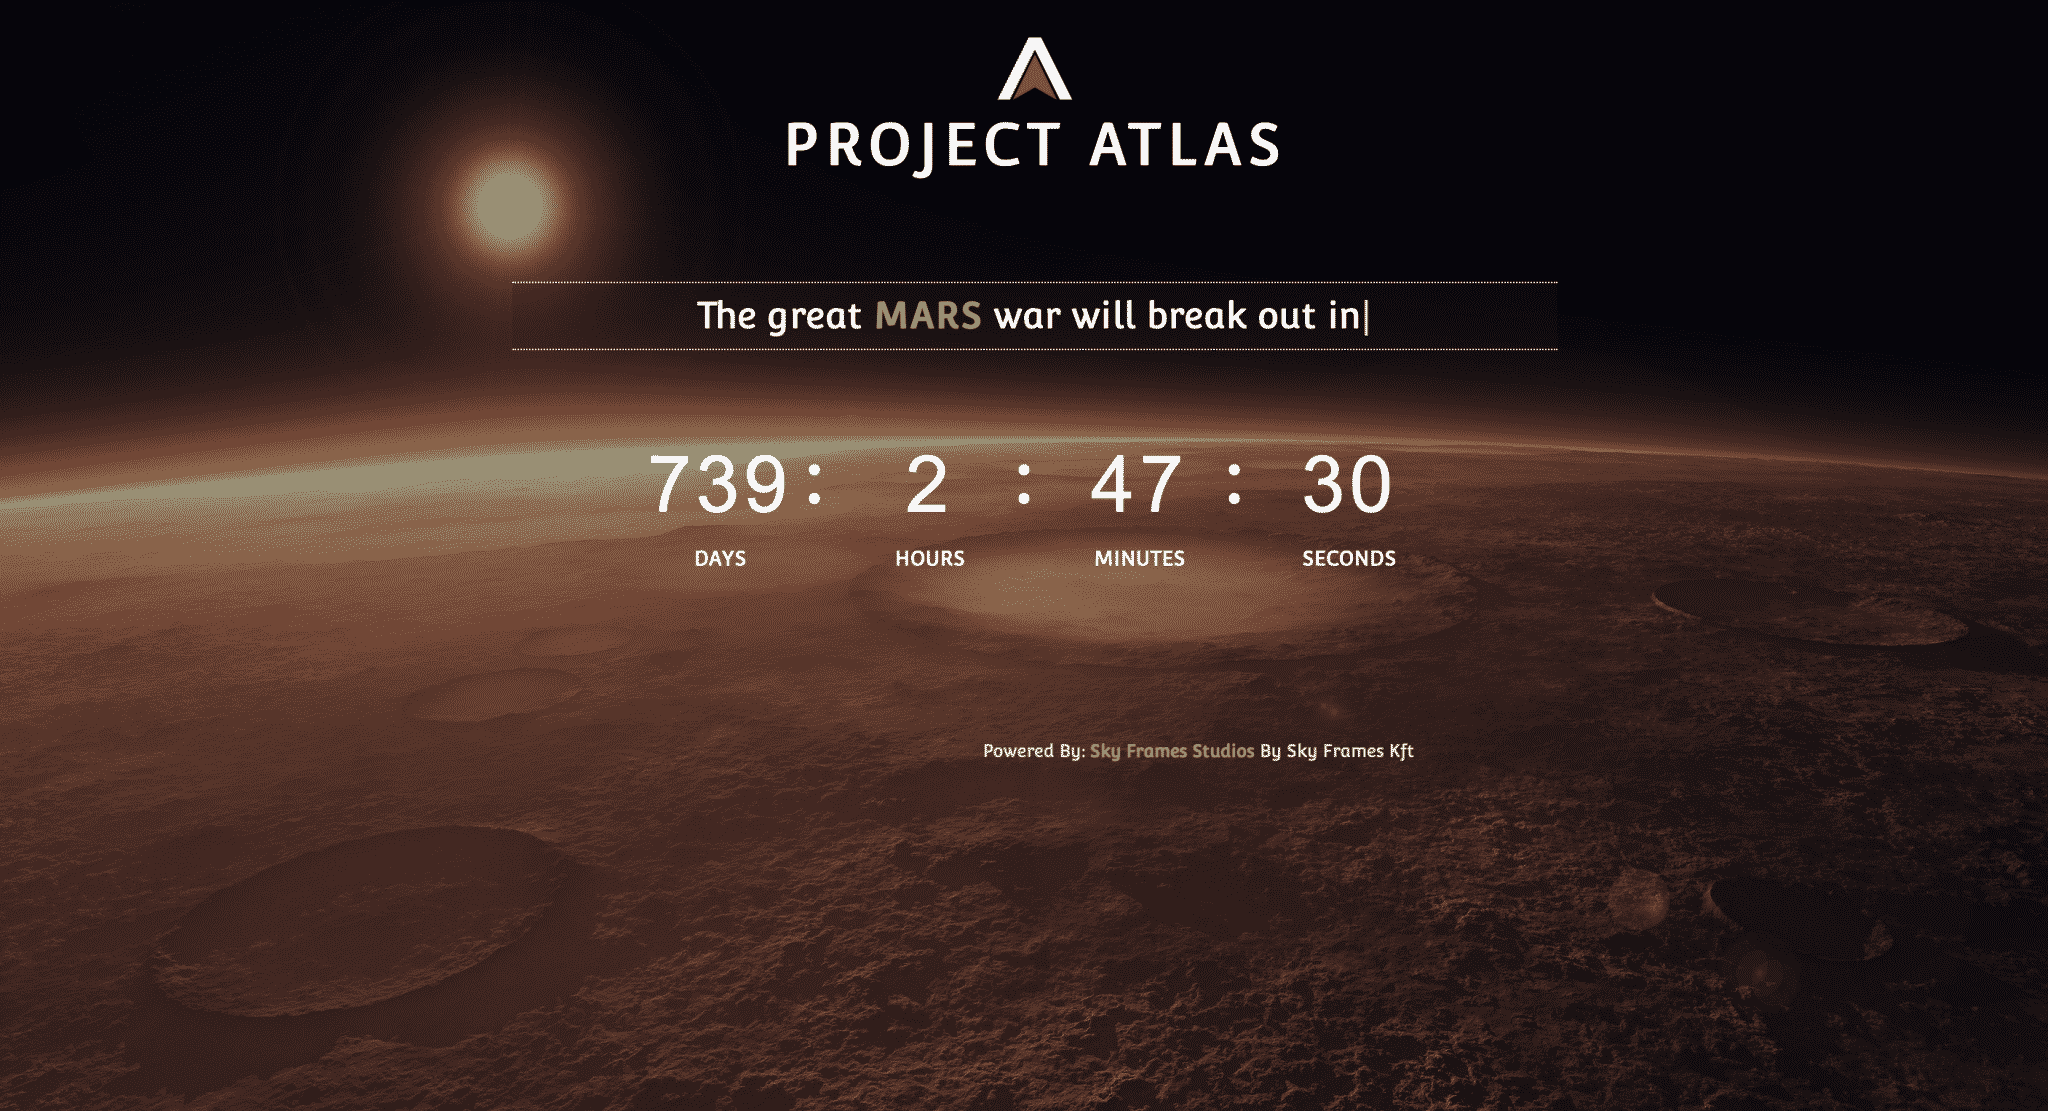 Project Atlas